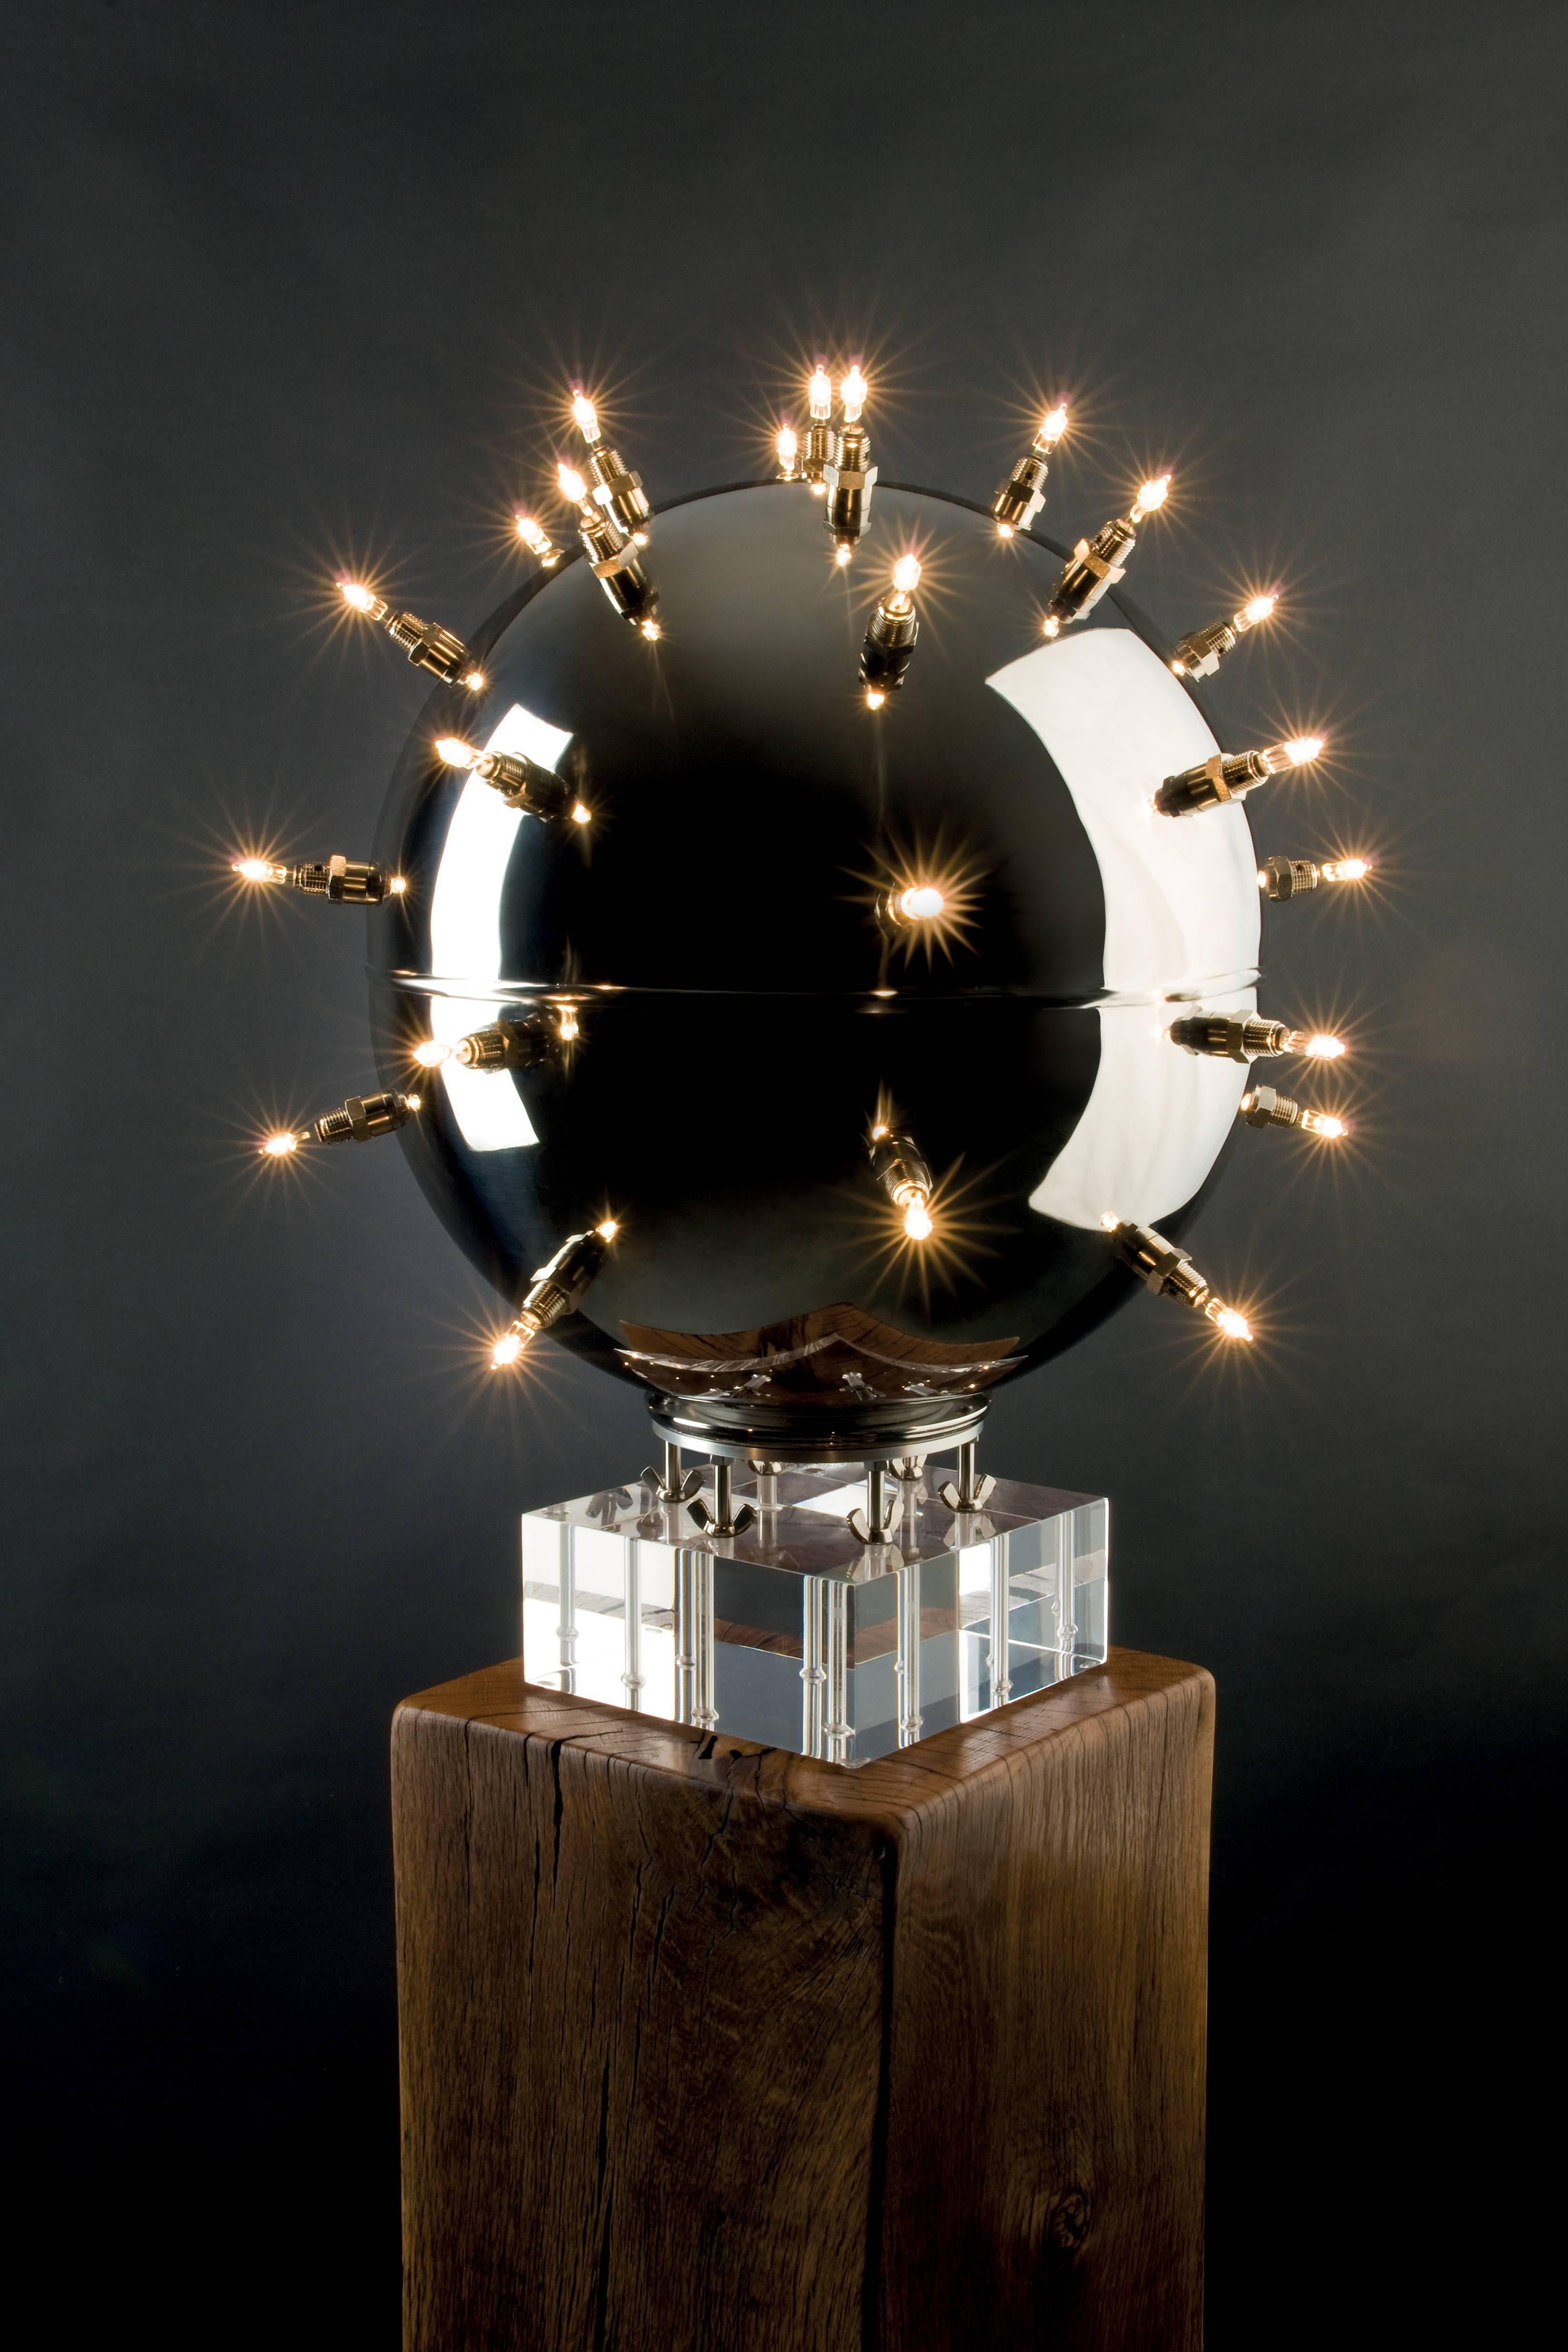 La lampe de table 'BeMine 33' est composée d'une sphère en acier inoxydable poli miroir et de 33 sources d'éclairage. L'acier inoxydable hautement poli permet d'intéressants jeux de reflets sur la surface de la sphère, qui apparaissent également